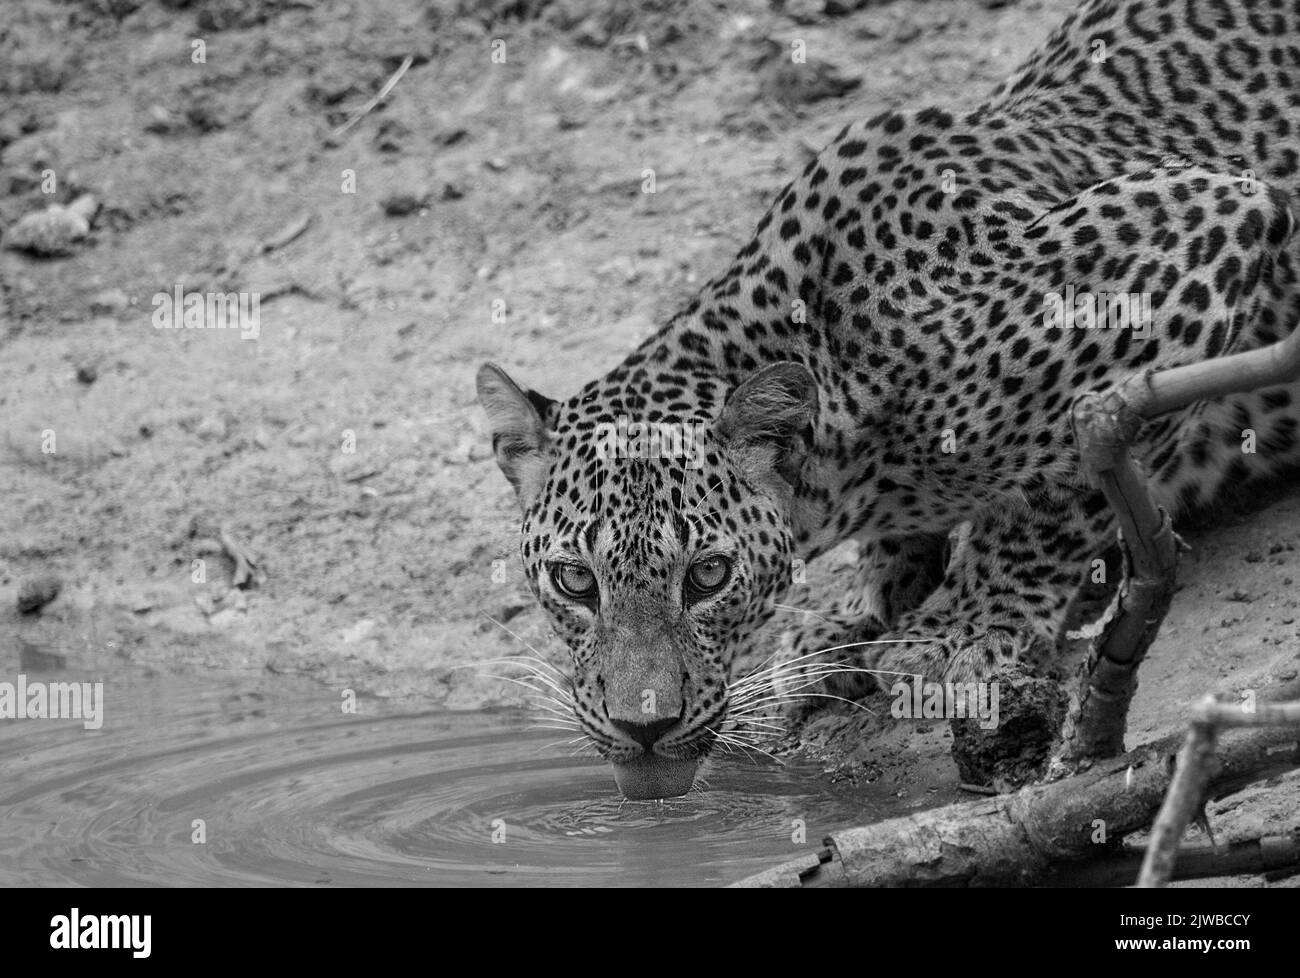 Leopards of Sri Lanka in the wild Stock Photo